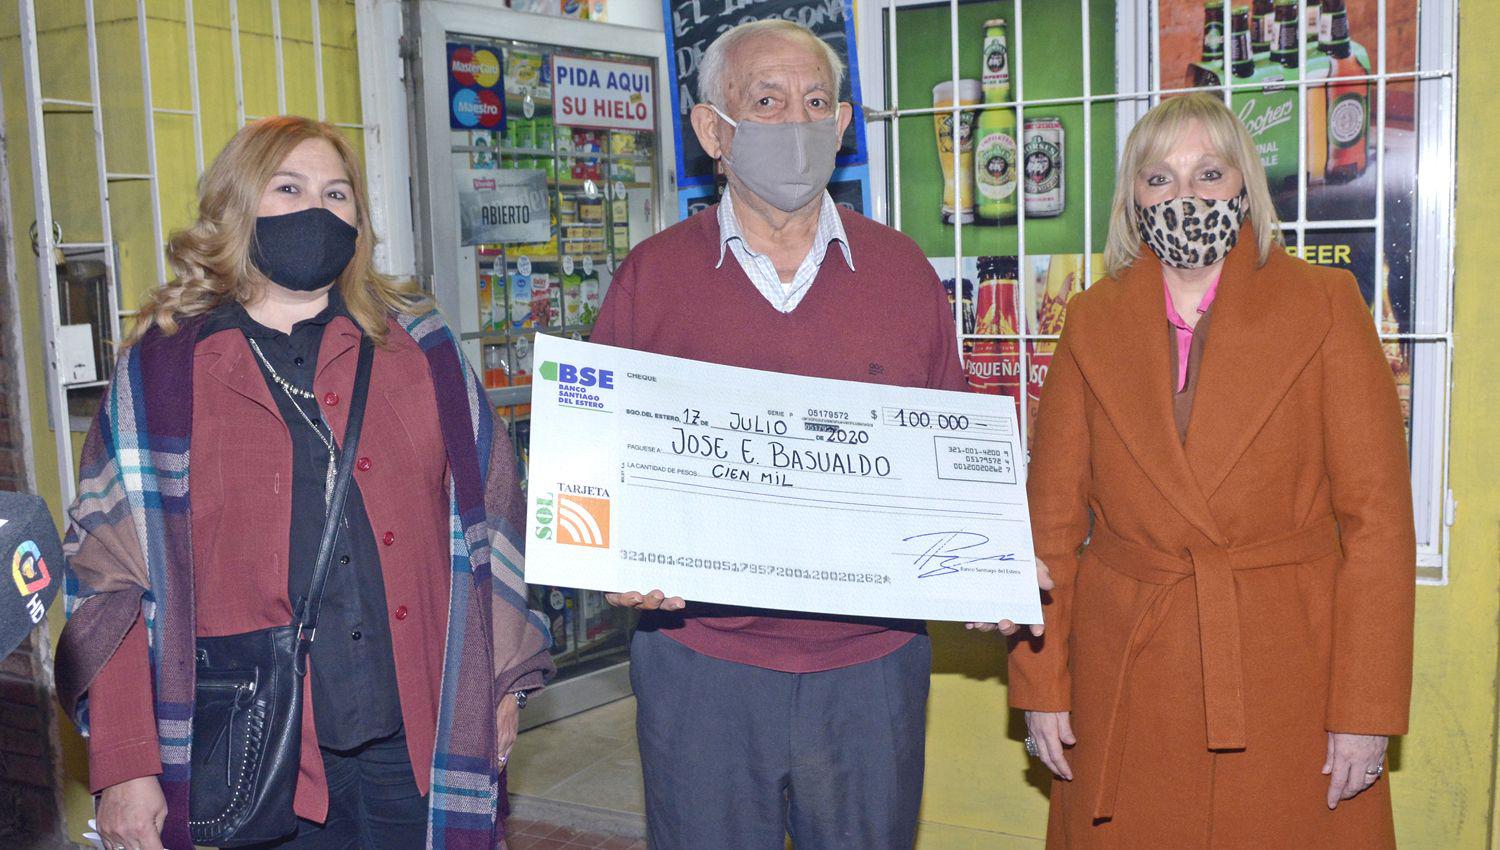 Directivas de Tarjeta Sol y BSE le entregaron el premio de 100000 pesos a don José Basualdo en su domicilio quien se emocionó porque el 15 de
diciembre pasado tuvo que cerrar su negocio